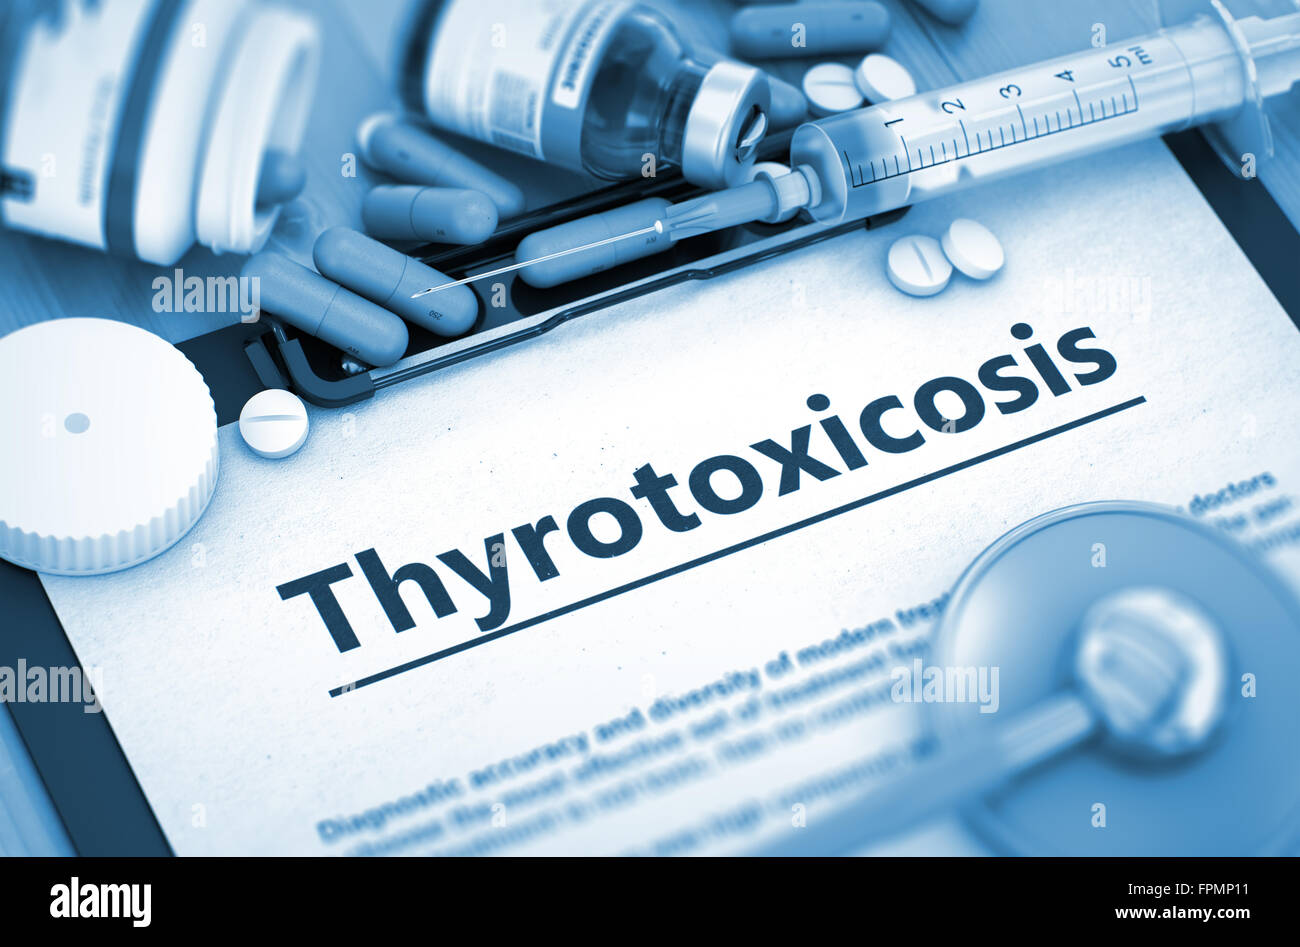 Thyrotoxicosis. Medical Concept. Stock Photo